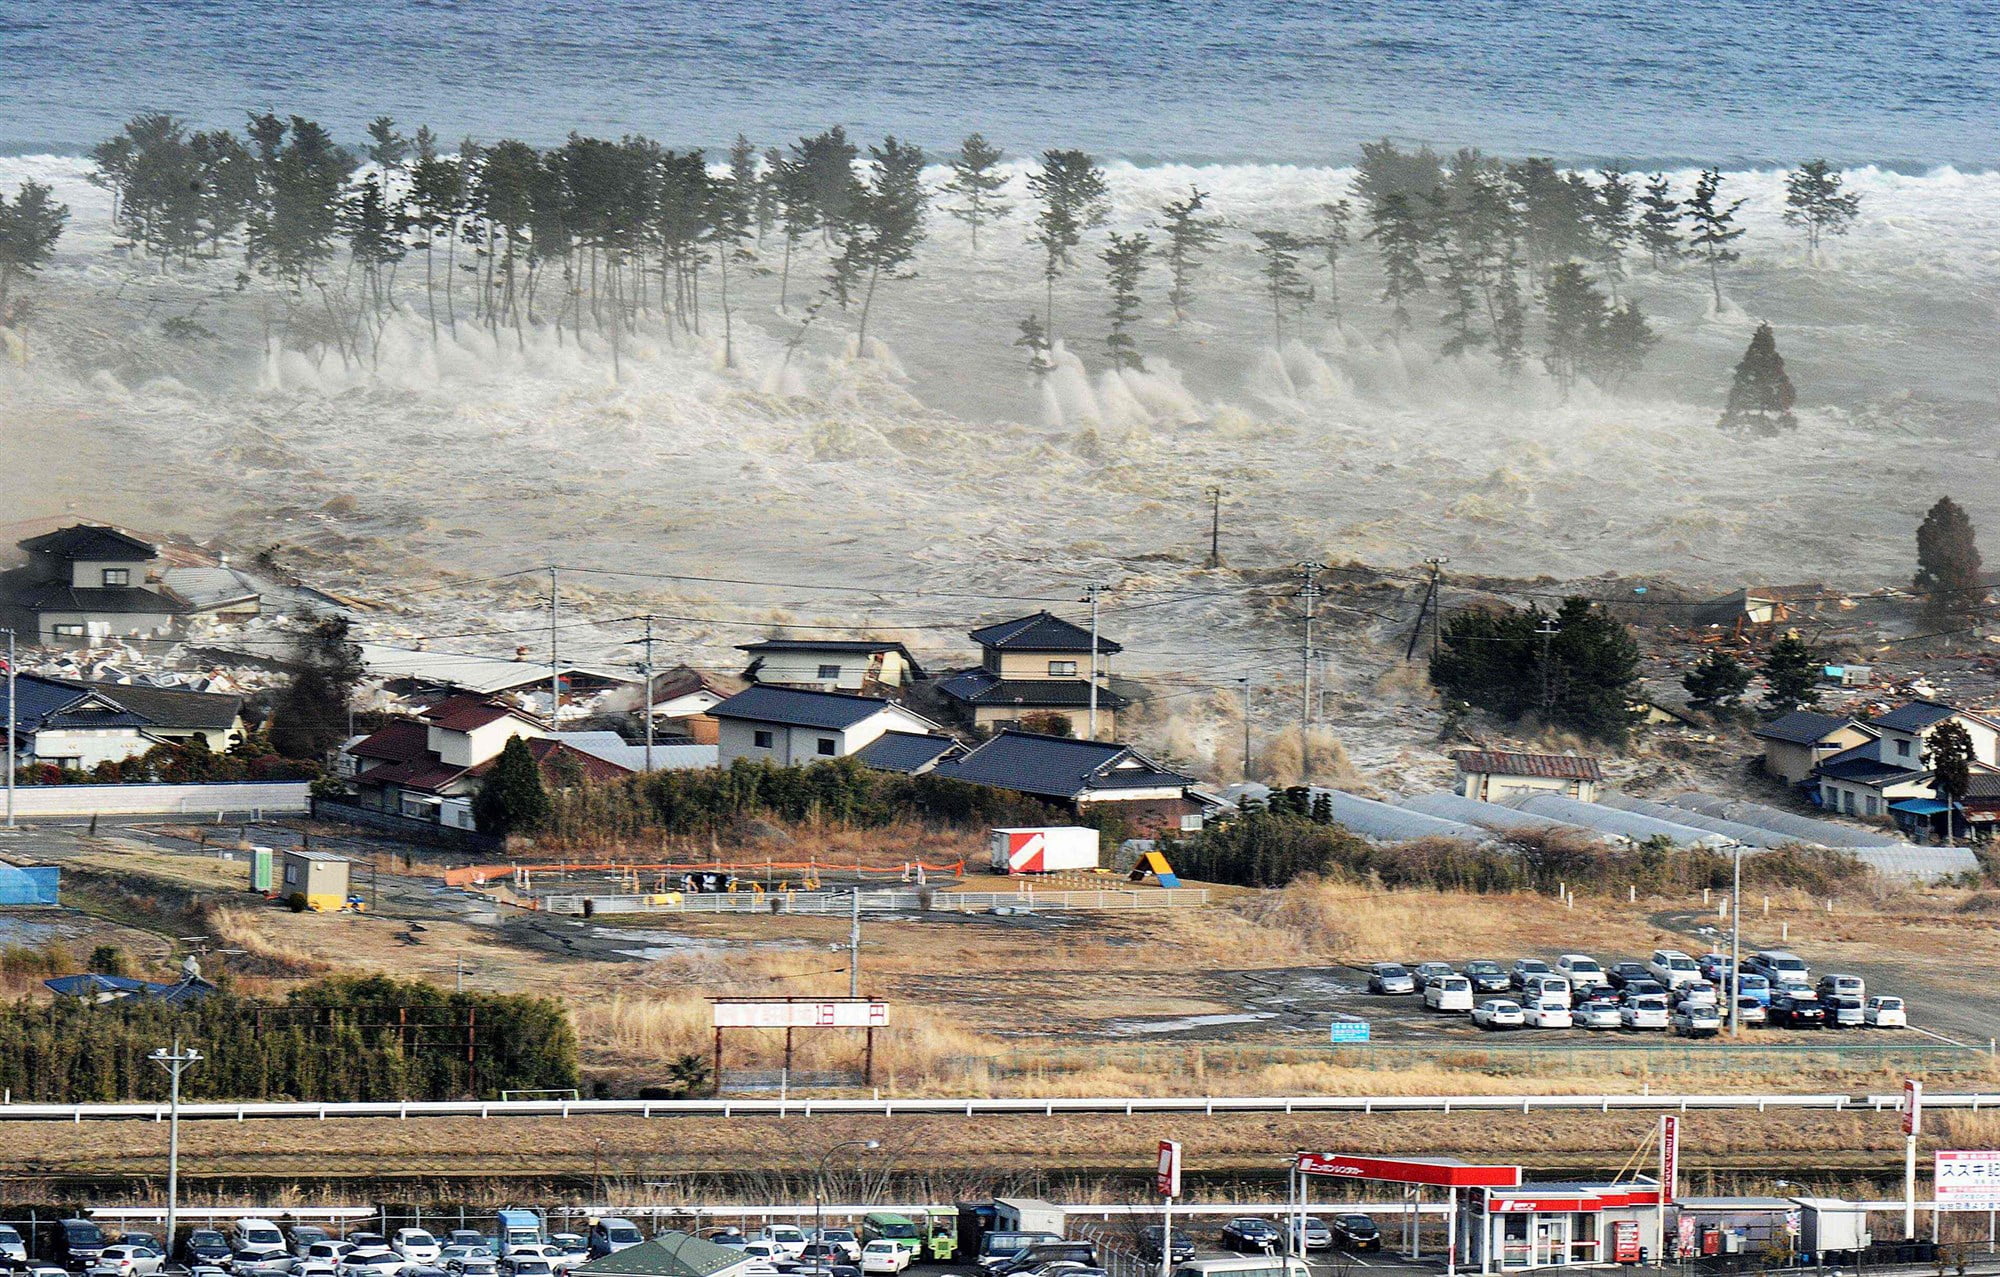 180516 honshu japan earthquake tsunami 2011 ew 1247p 30b4f2b065894321c8f4e46deb247565.fit 2000w